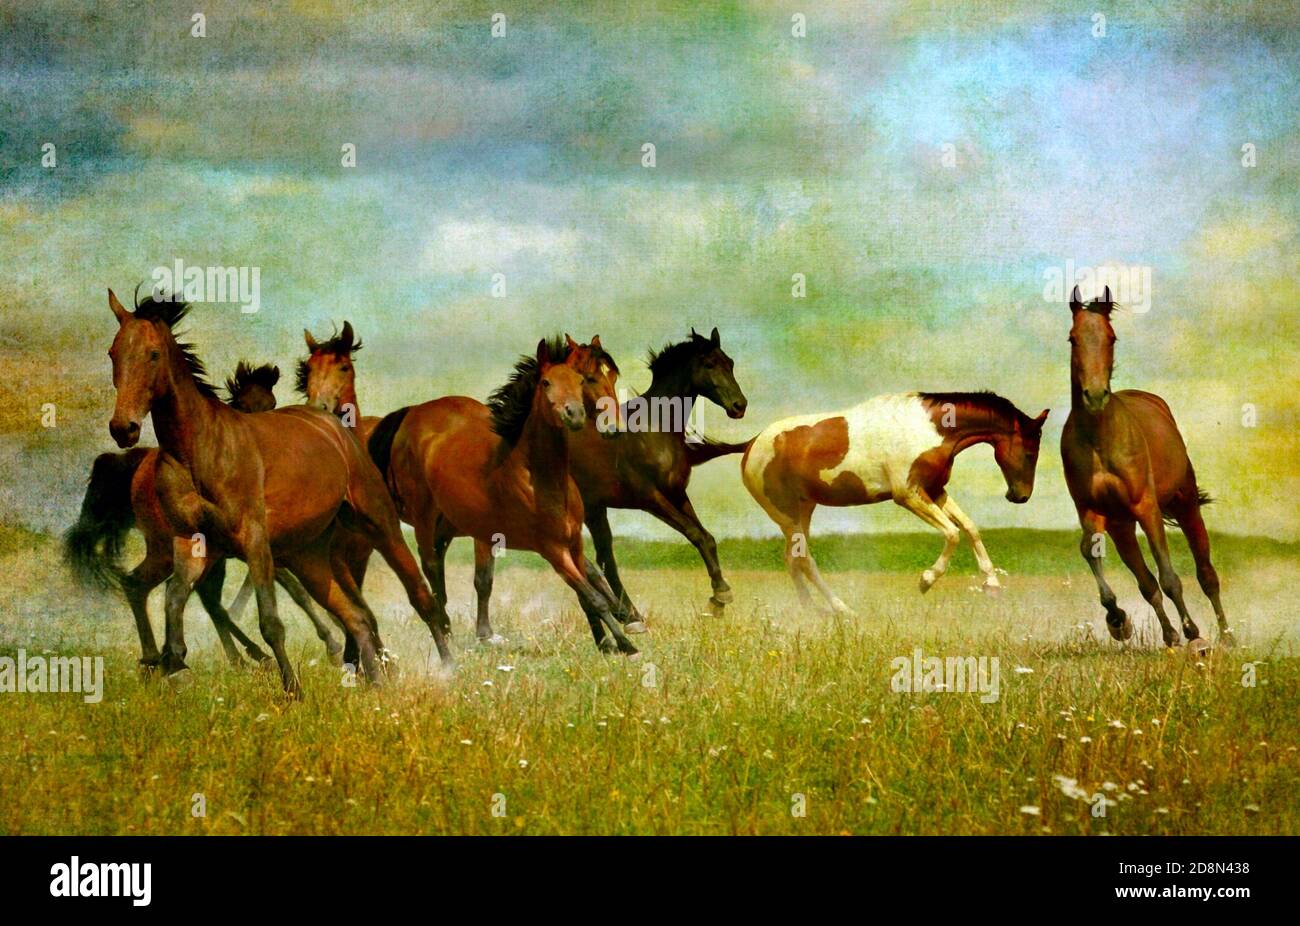 Imágenes atmosféricas de caballos corriendo en el desierto. Foto de stock